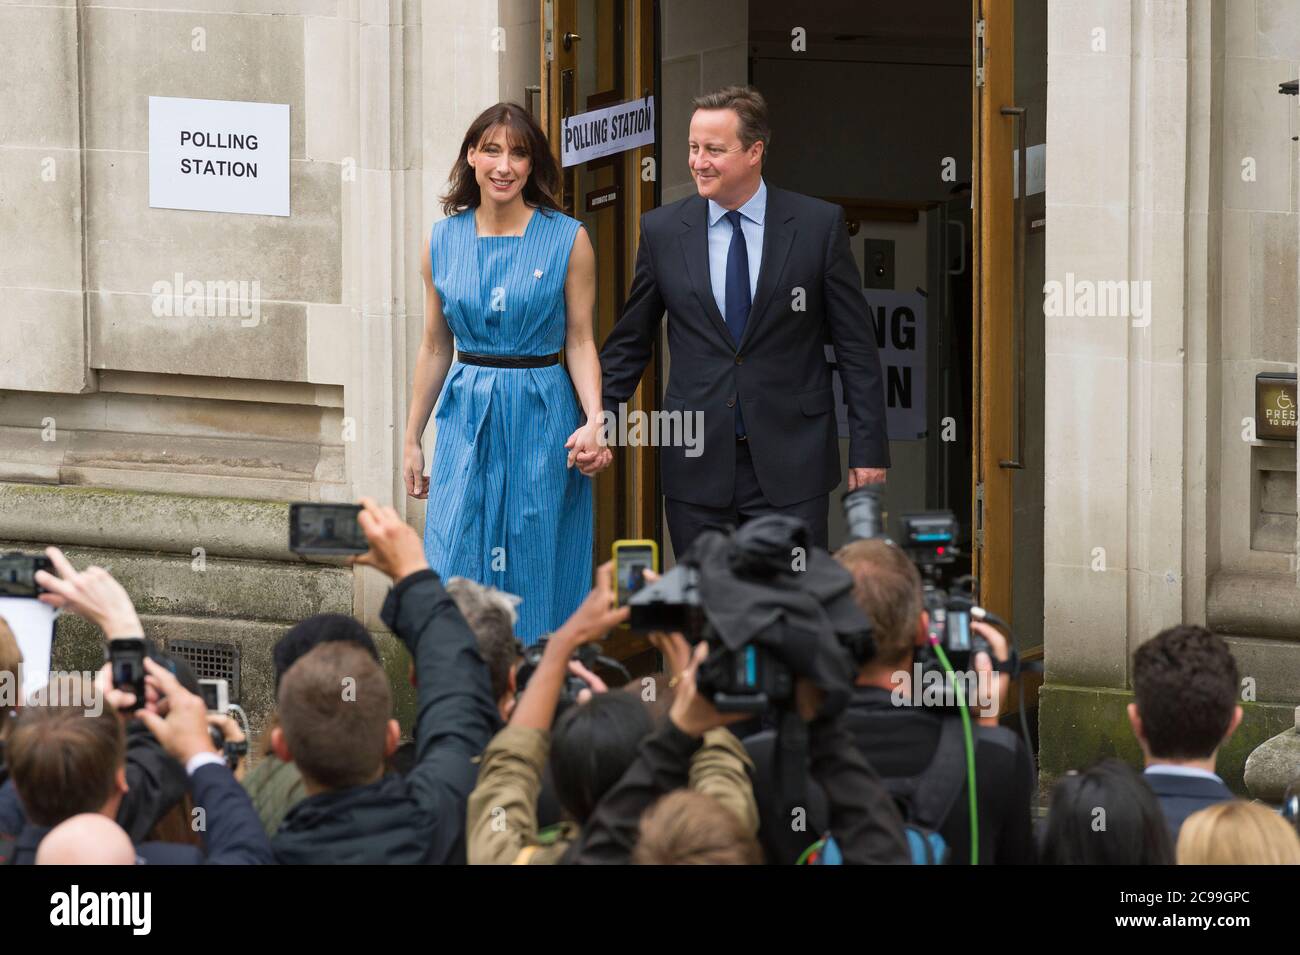 El primer ministro británico David Cameron se va con su esposa Samantha después de votar en el referéndum británico sobre si seguir siendo parte de la Unión Europea o irse, Methodist Central Hall Westminster, Londres, Reino Unido. 23 de junio de 2016 Foto de stock